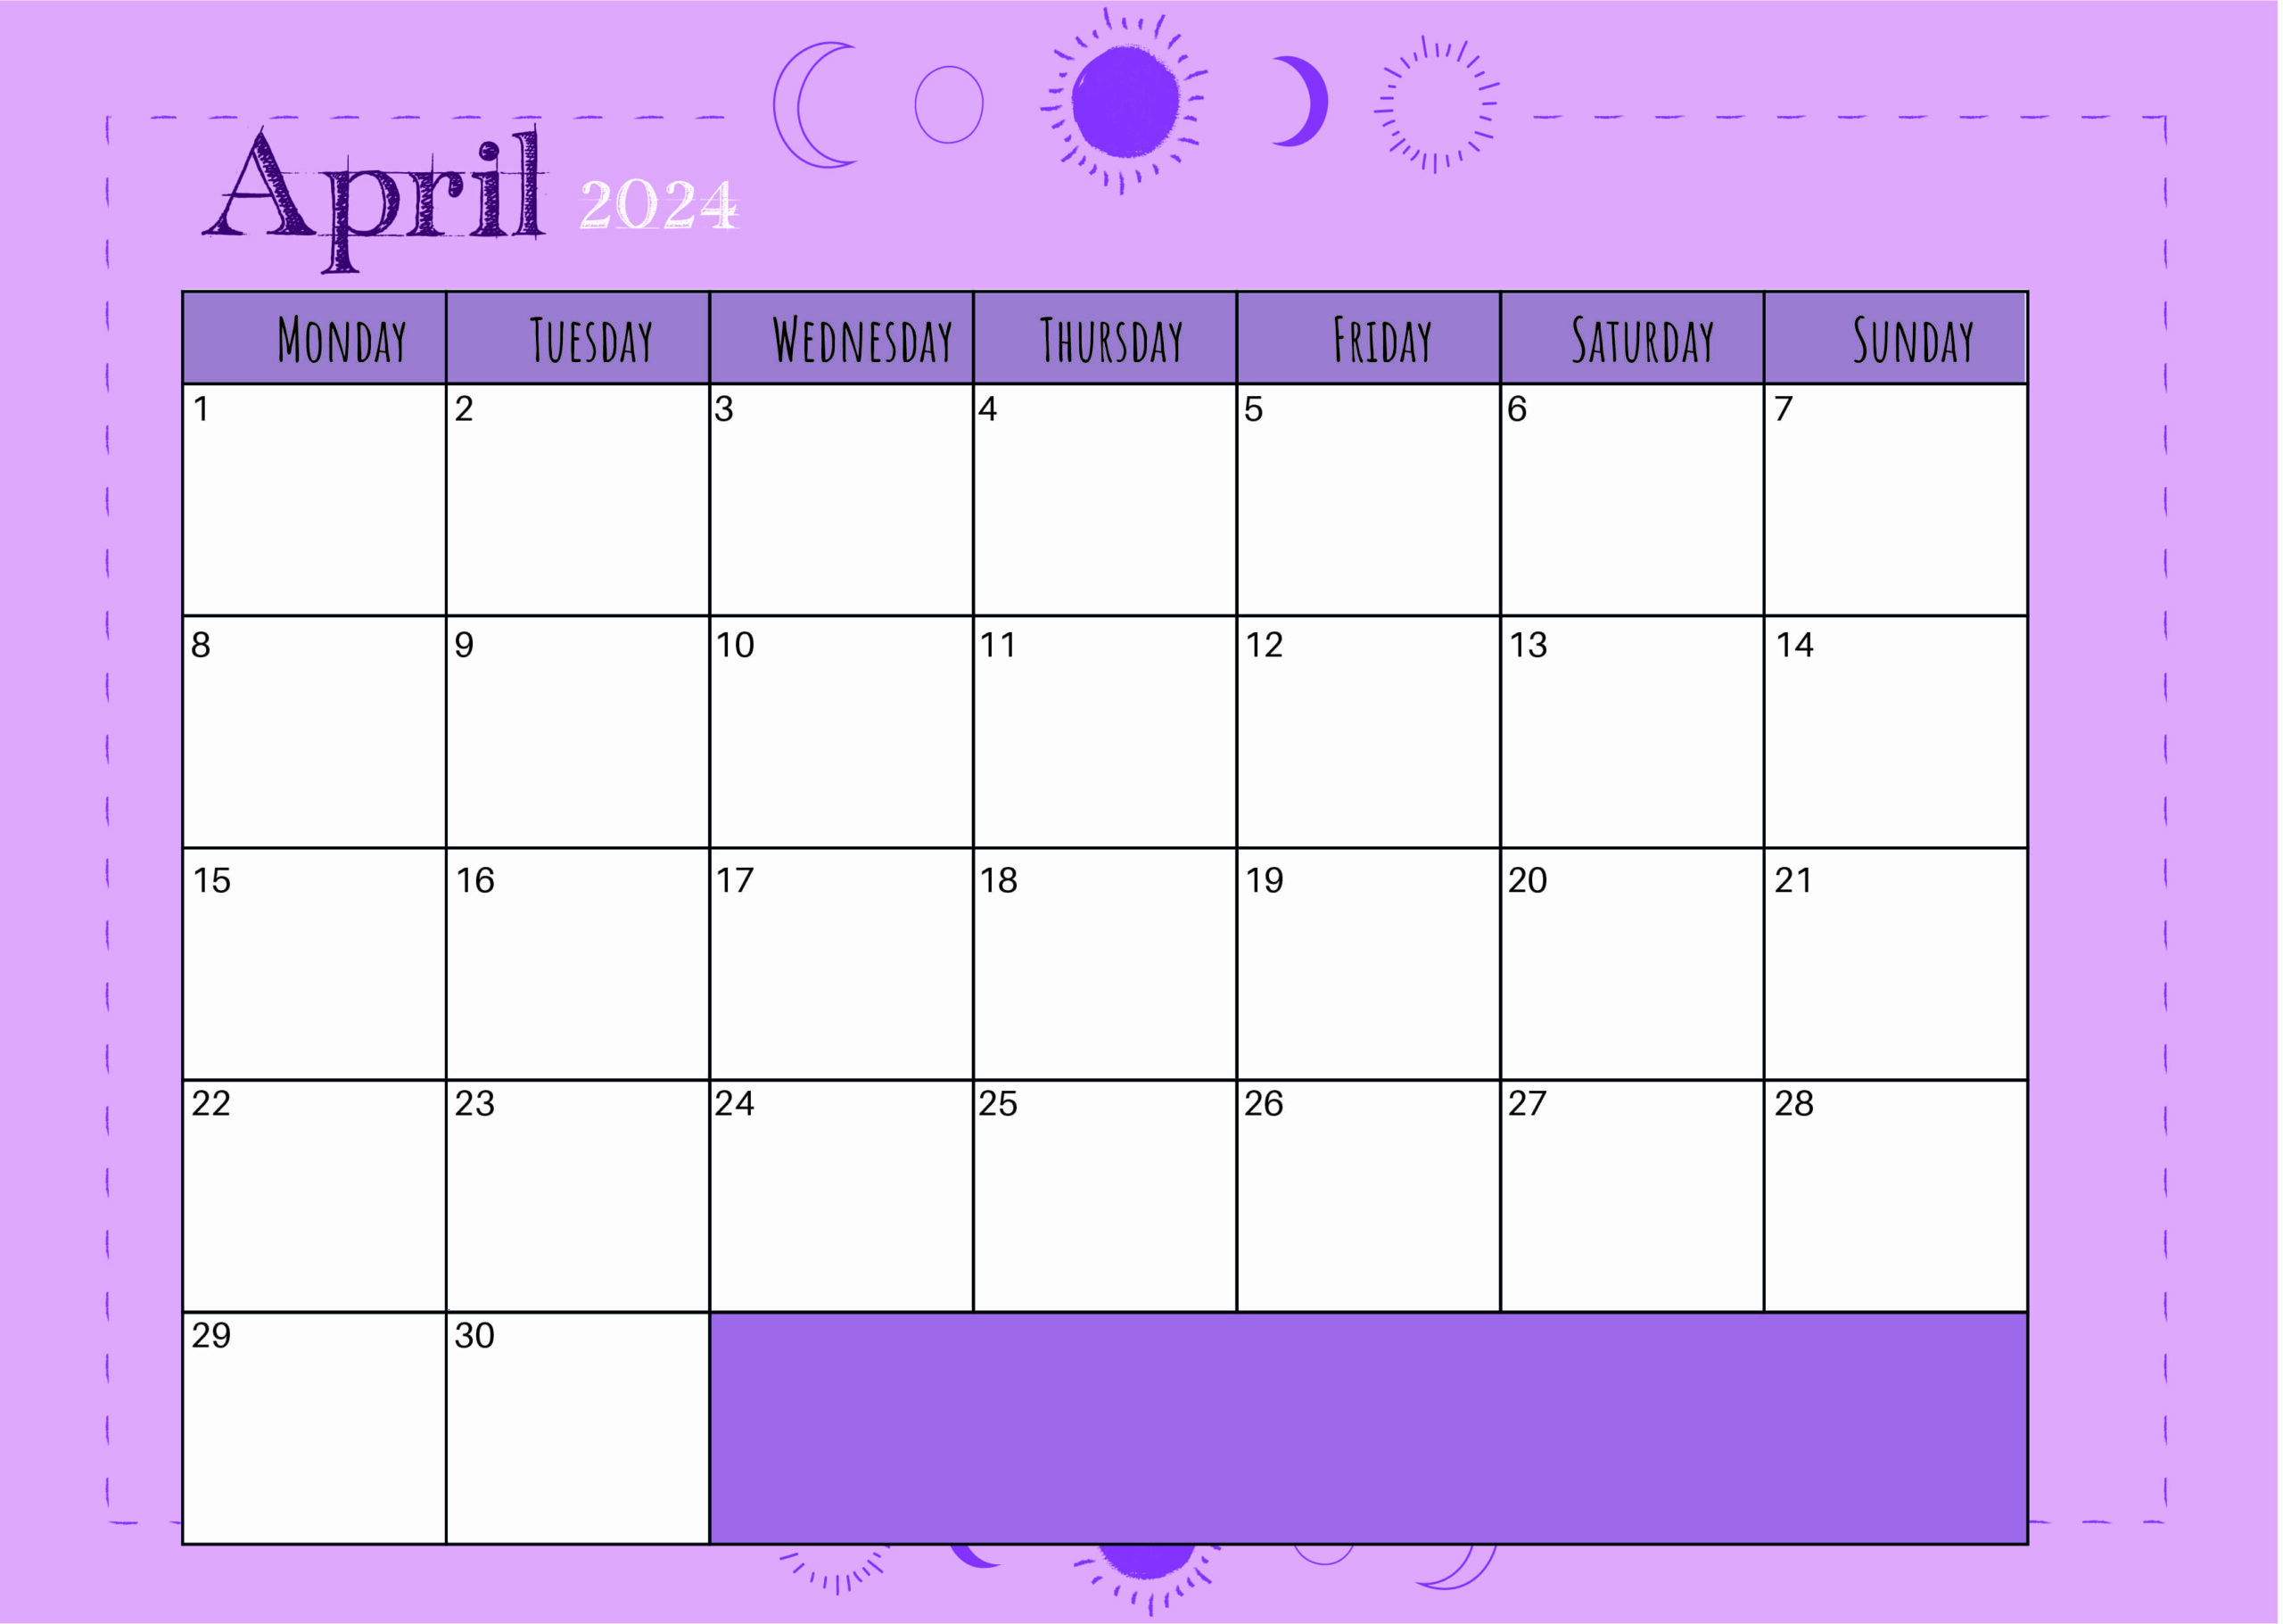 April 2024 Calendar for Printing in PDF